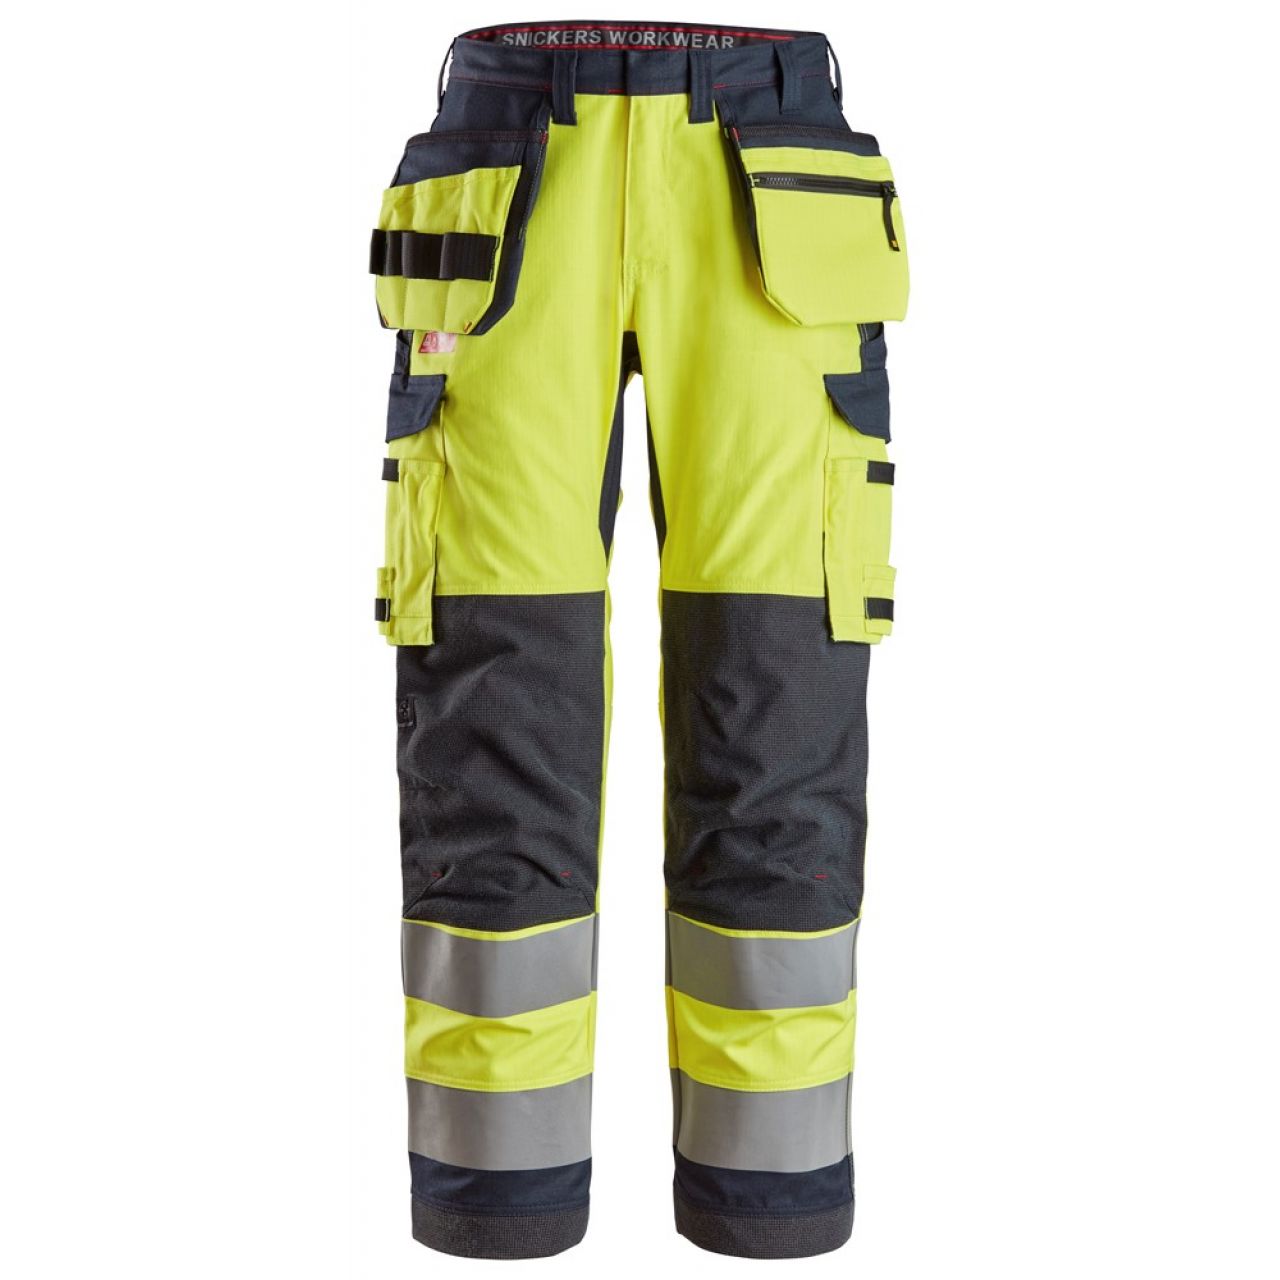 6261 Pantalones largos de trabajo de alta visibilidad clase 2 con bolsillos flotantes simétricos ProtecWork amarillo-azul marino talla 144